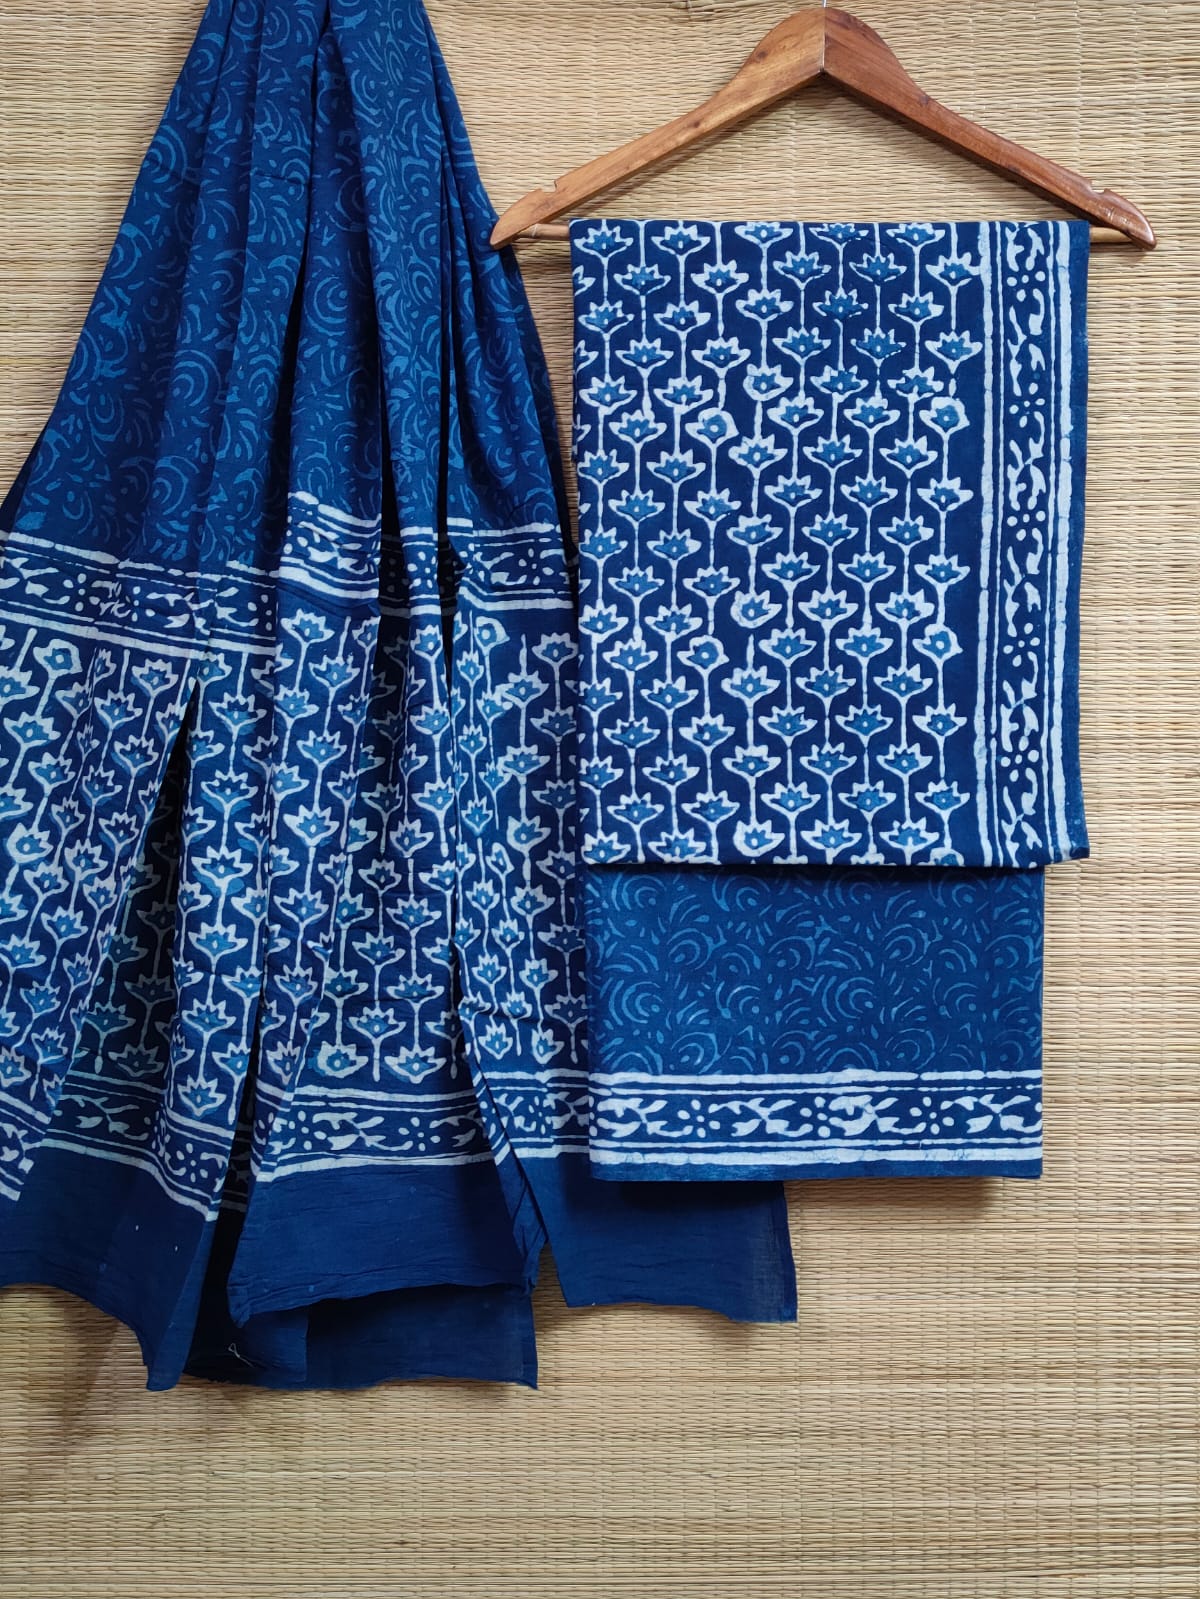 Hand Block Cotton Unstitched Salwar Suit With Cotton/Mulmul Dupatta - JBCM828